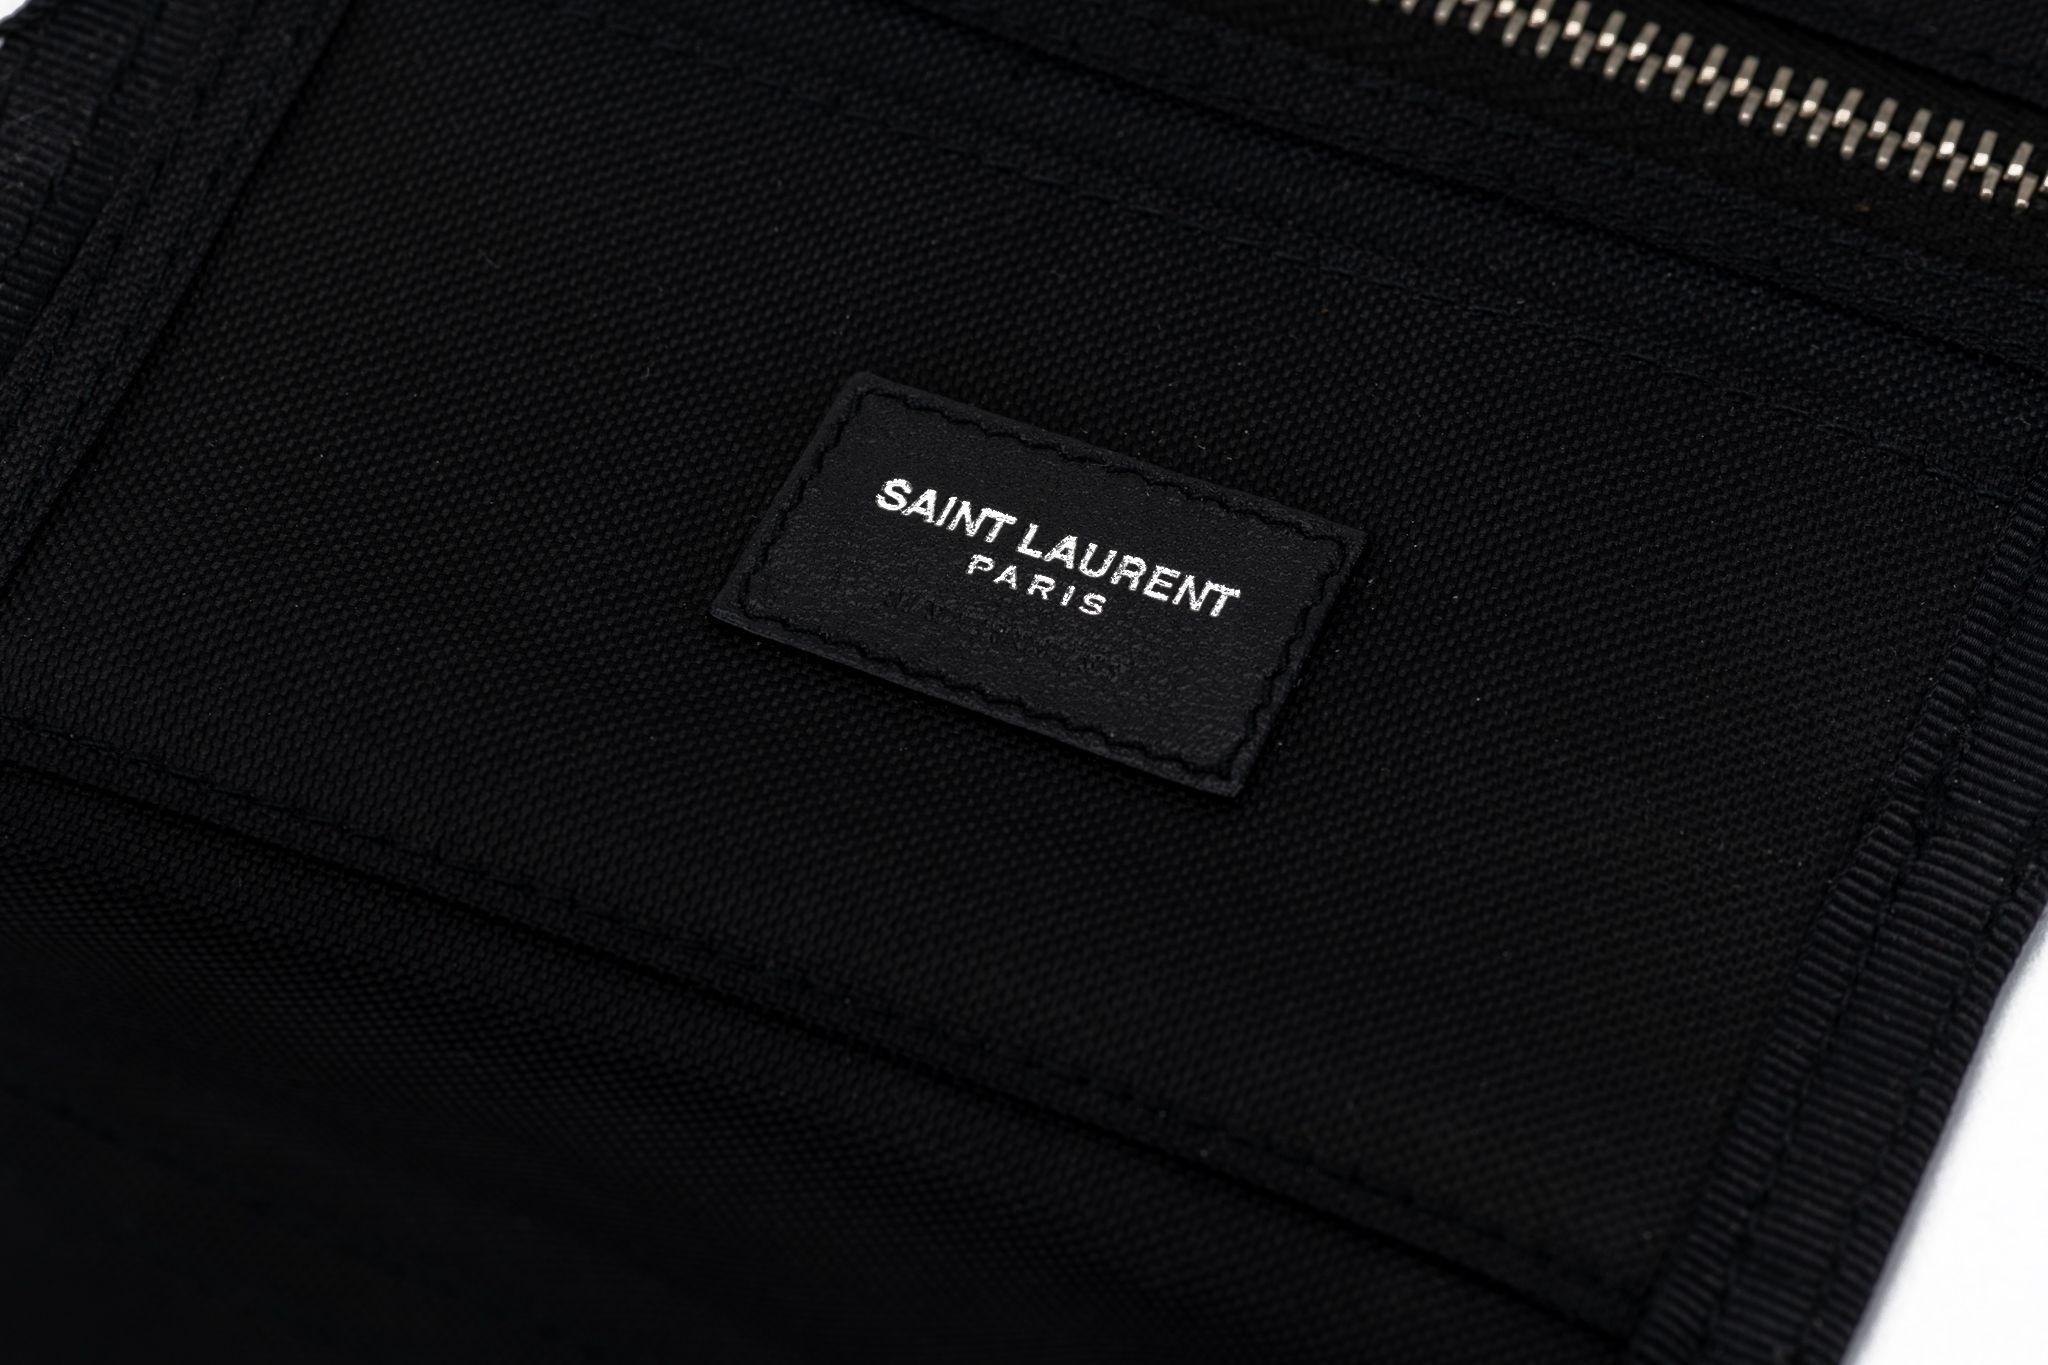 YSL neue schwarze Canvas Palme Brieftasche mit mehreren Taschen und Schlitzen .
Kommt mit originalem Schutzumschlag und Box.